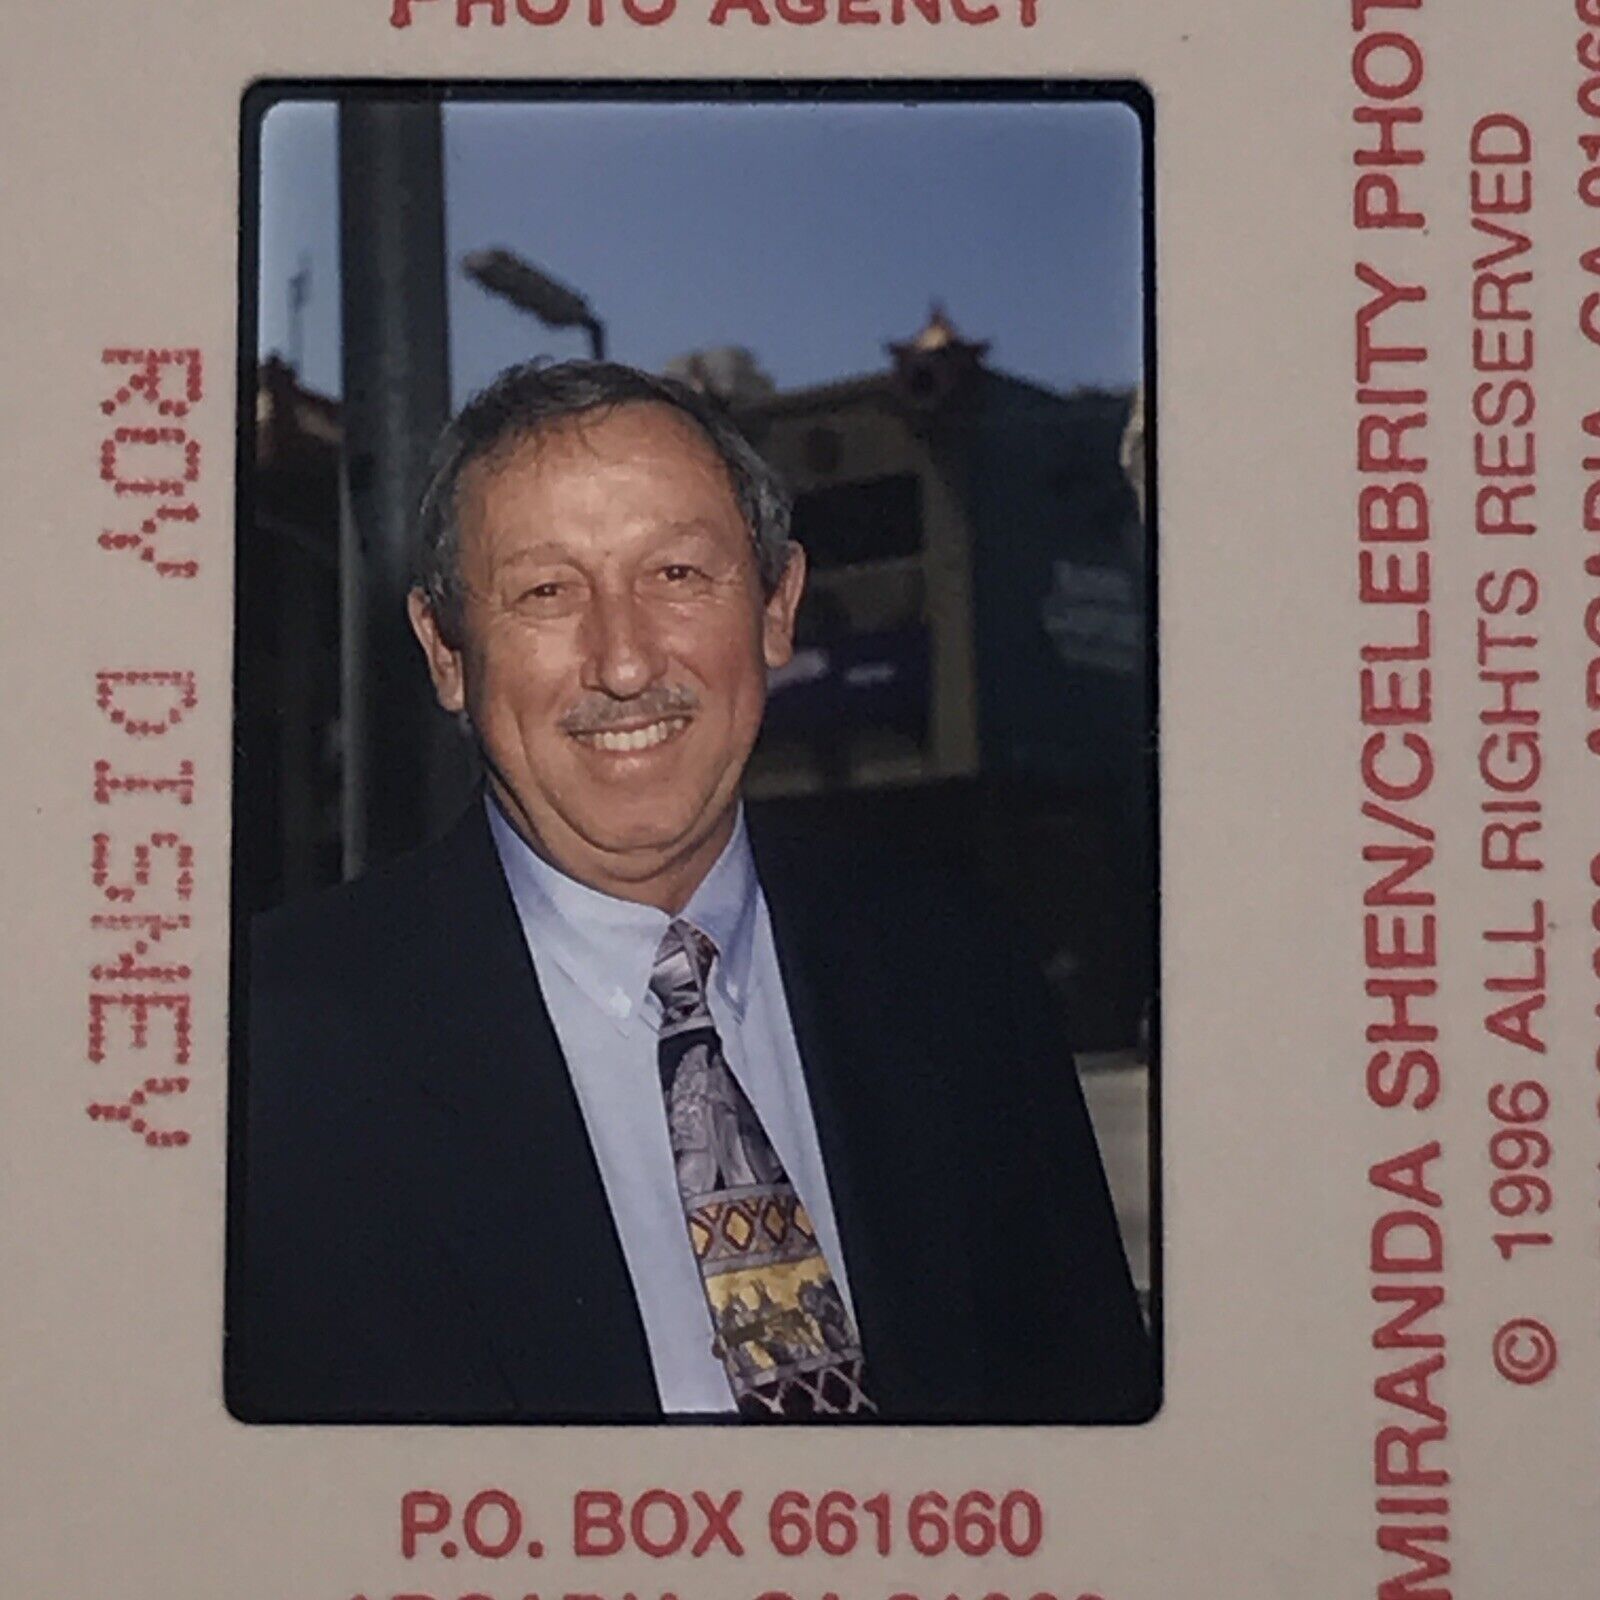 1996 Roy Disney at Humpback Premier Celebrity Color Photo Transparency Slide